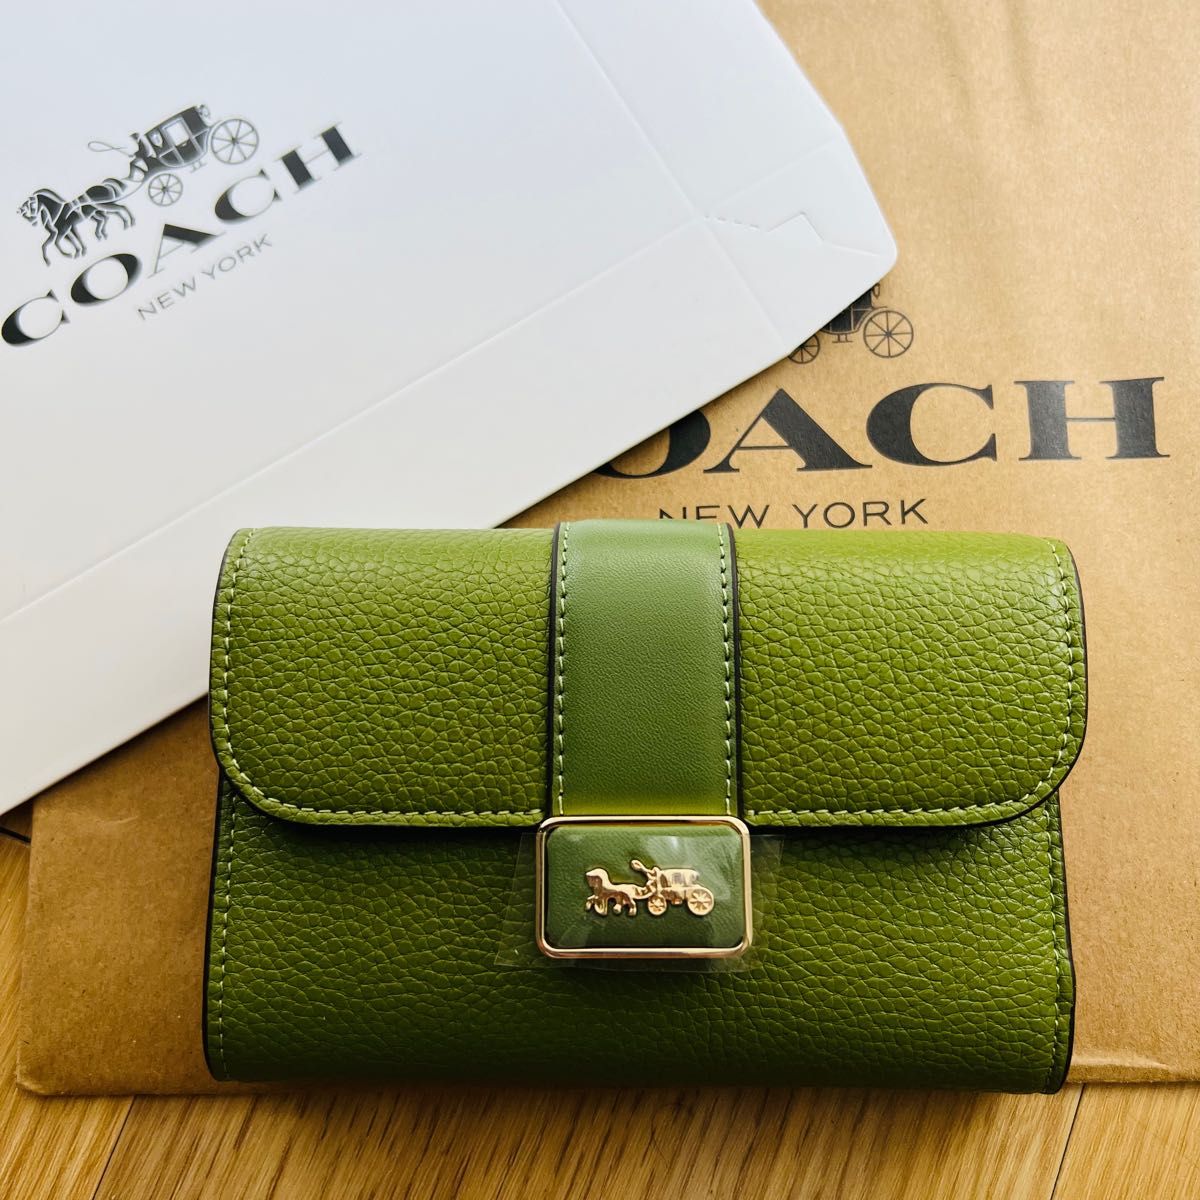 COACH折りたたみ財布おすすめデザイン可愛い人気おすすめプレゼント 